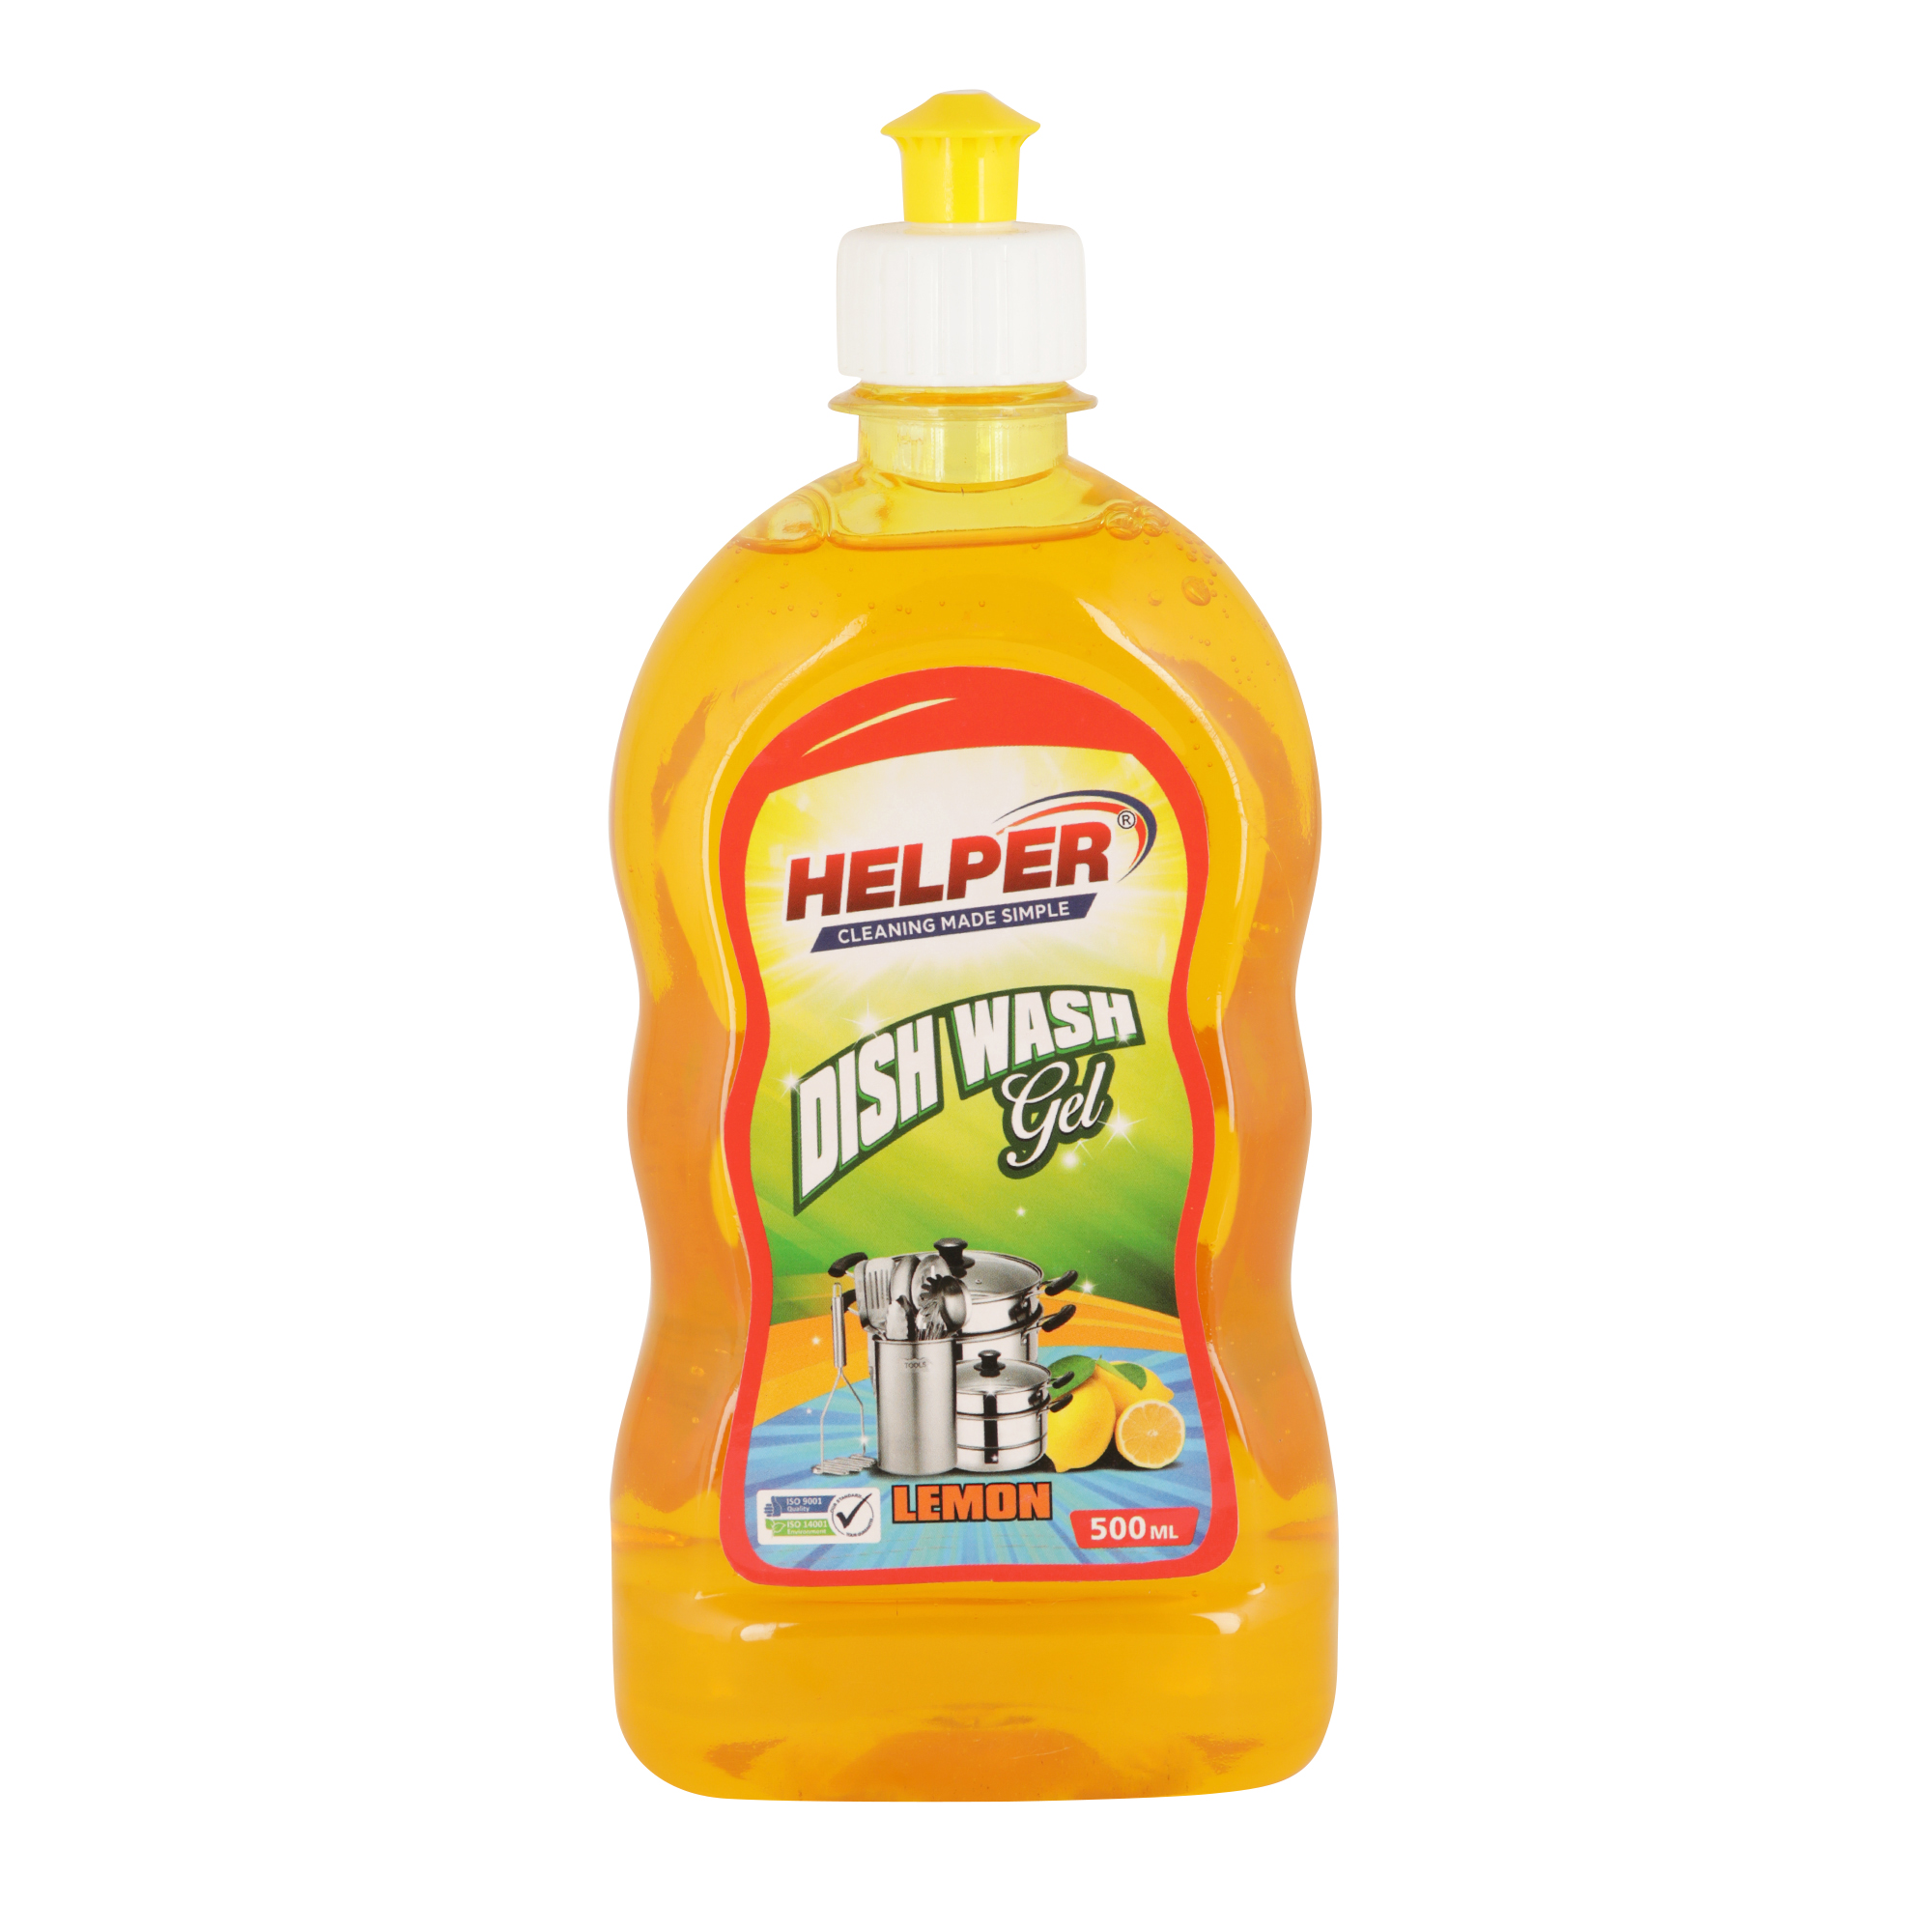 Helper Dish Wash Gel, Lemon (Yellow), 500ml Bottle